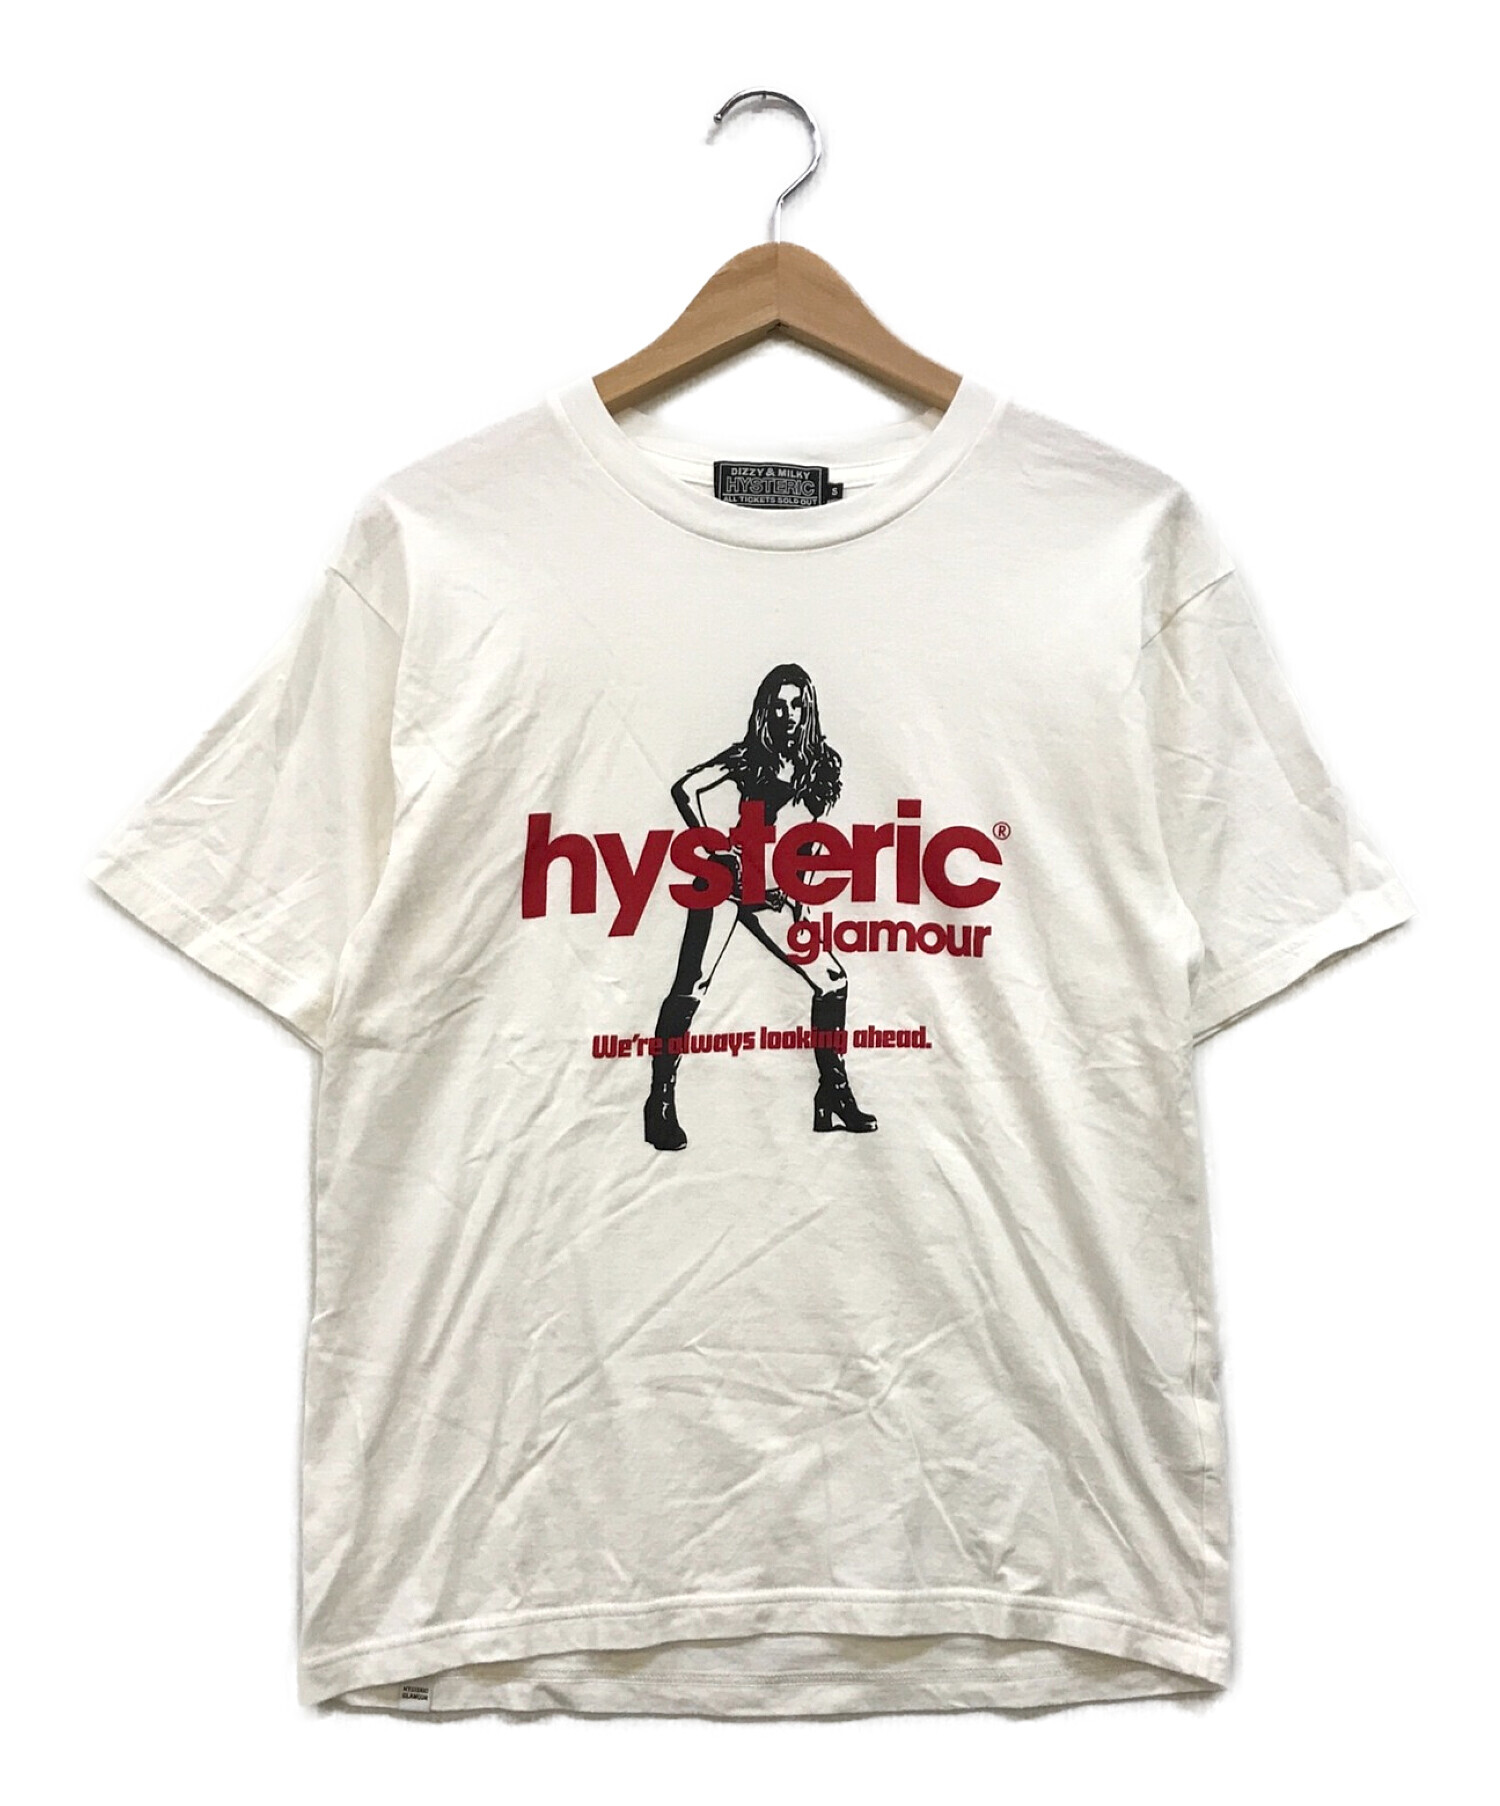 引出物 HYSTERIC GLAMOUR ヒステリックグラマー Tシャツ サイズ S tdh 